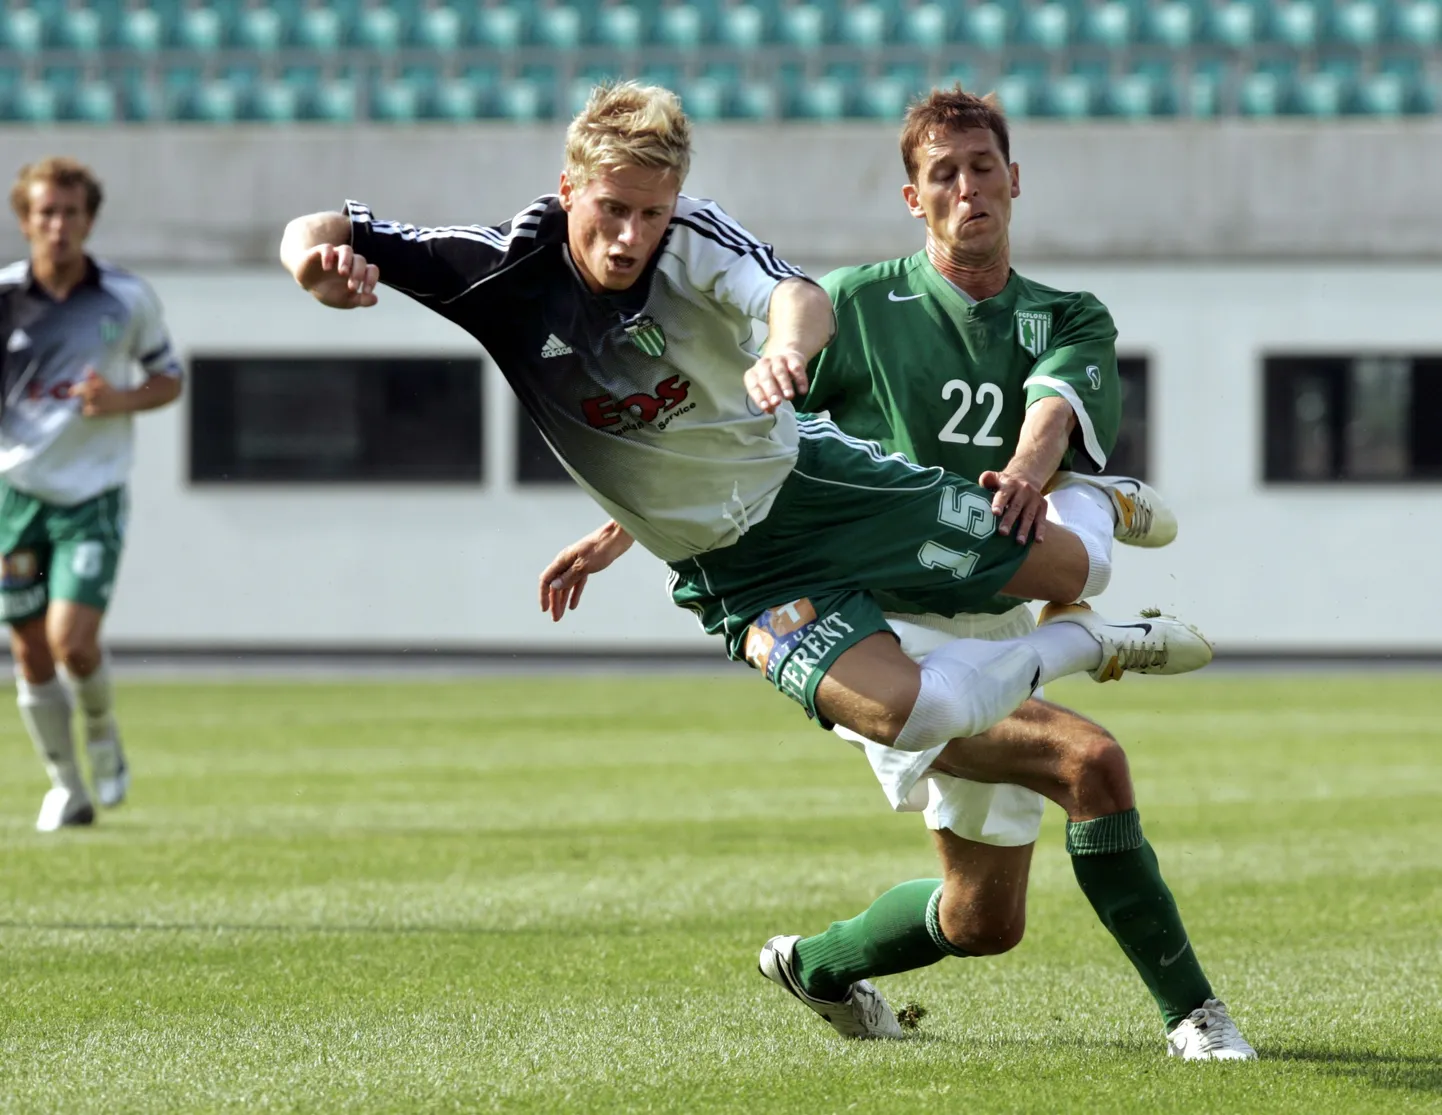 Pärnu pärit vutimees Teet Allas (22)juhib Eesti jalgpalliliidus noortetööd.